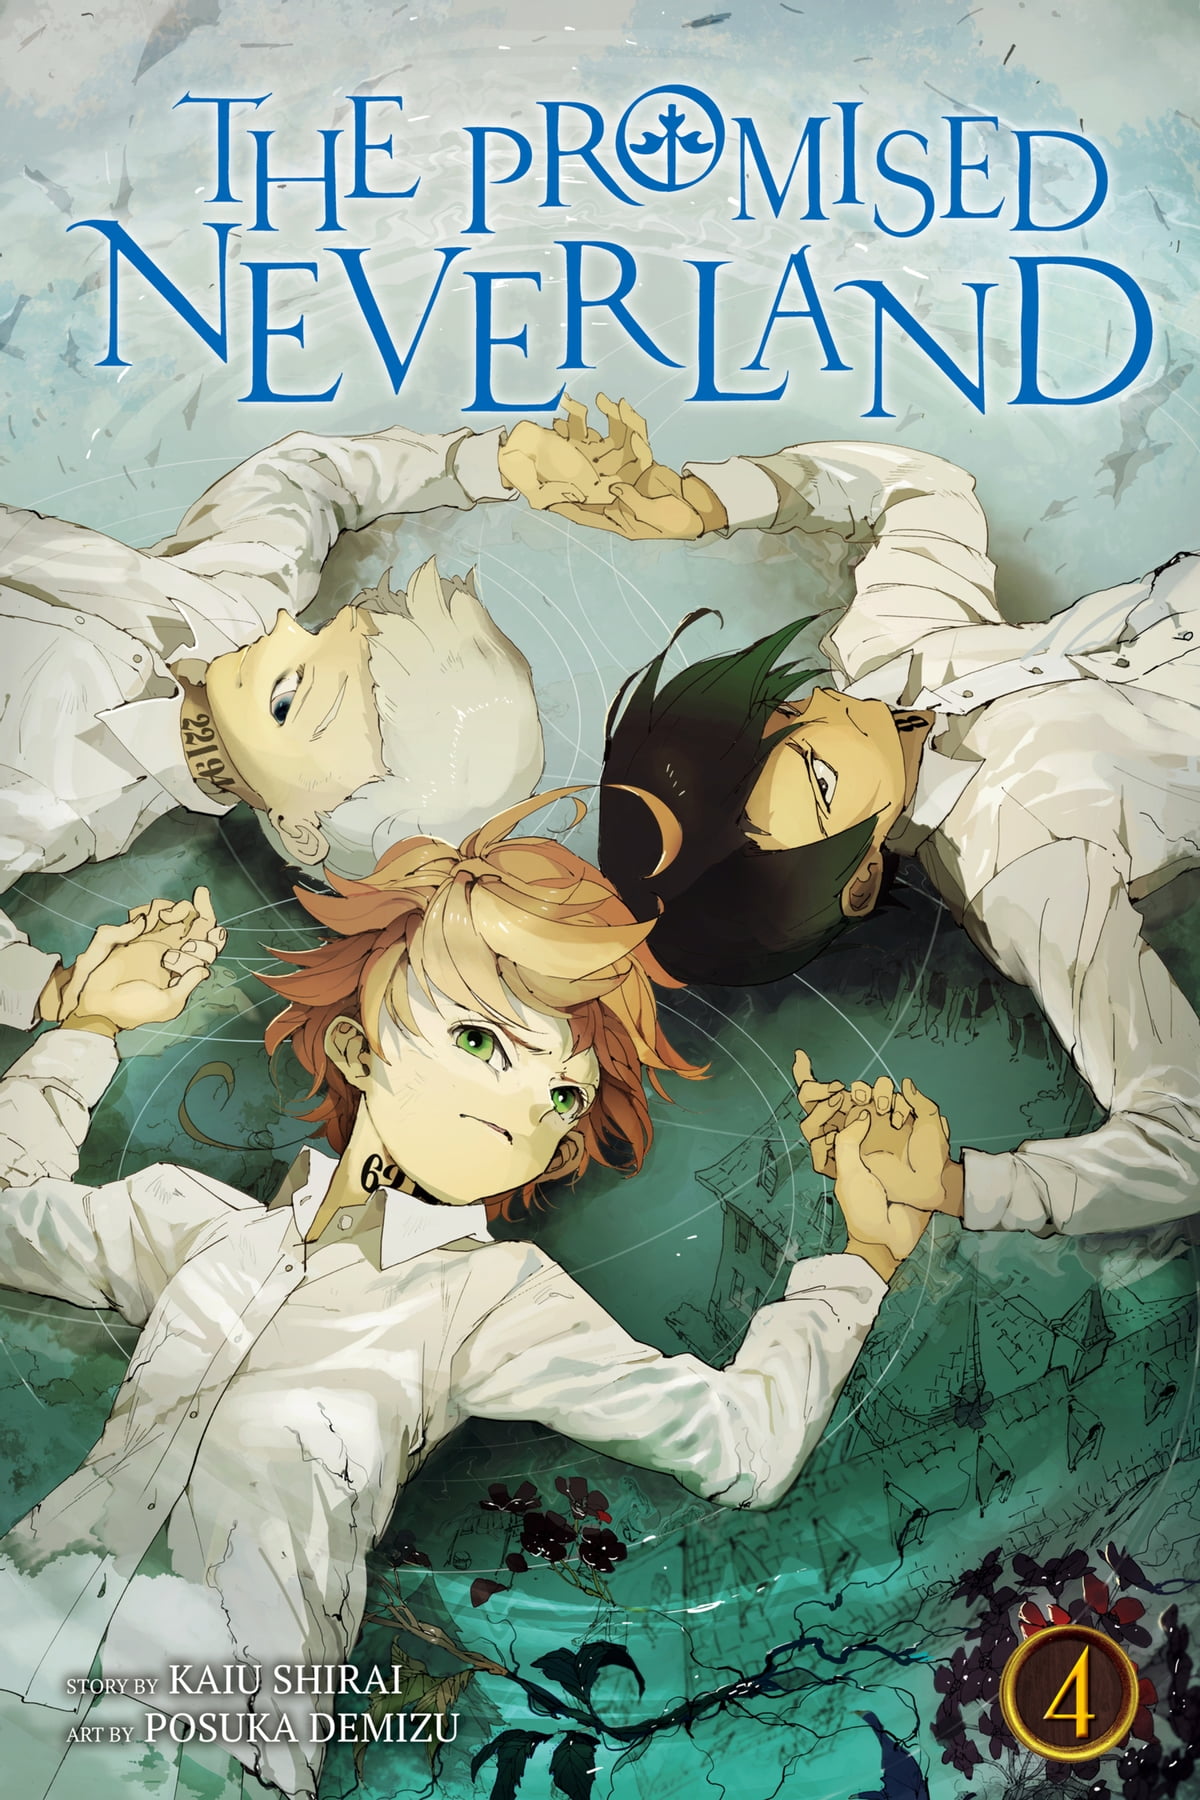 نکات مثبت کتاب The Promised Neverland